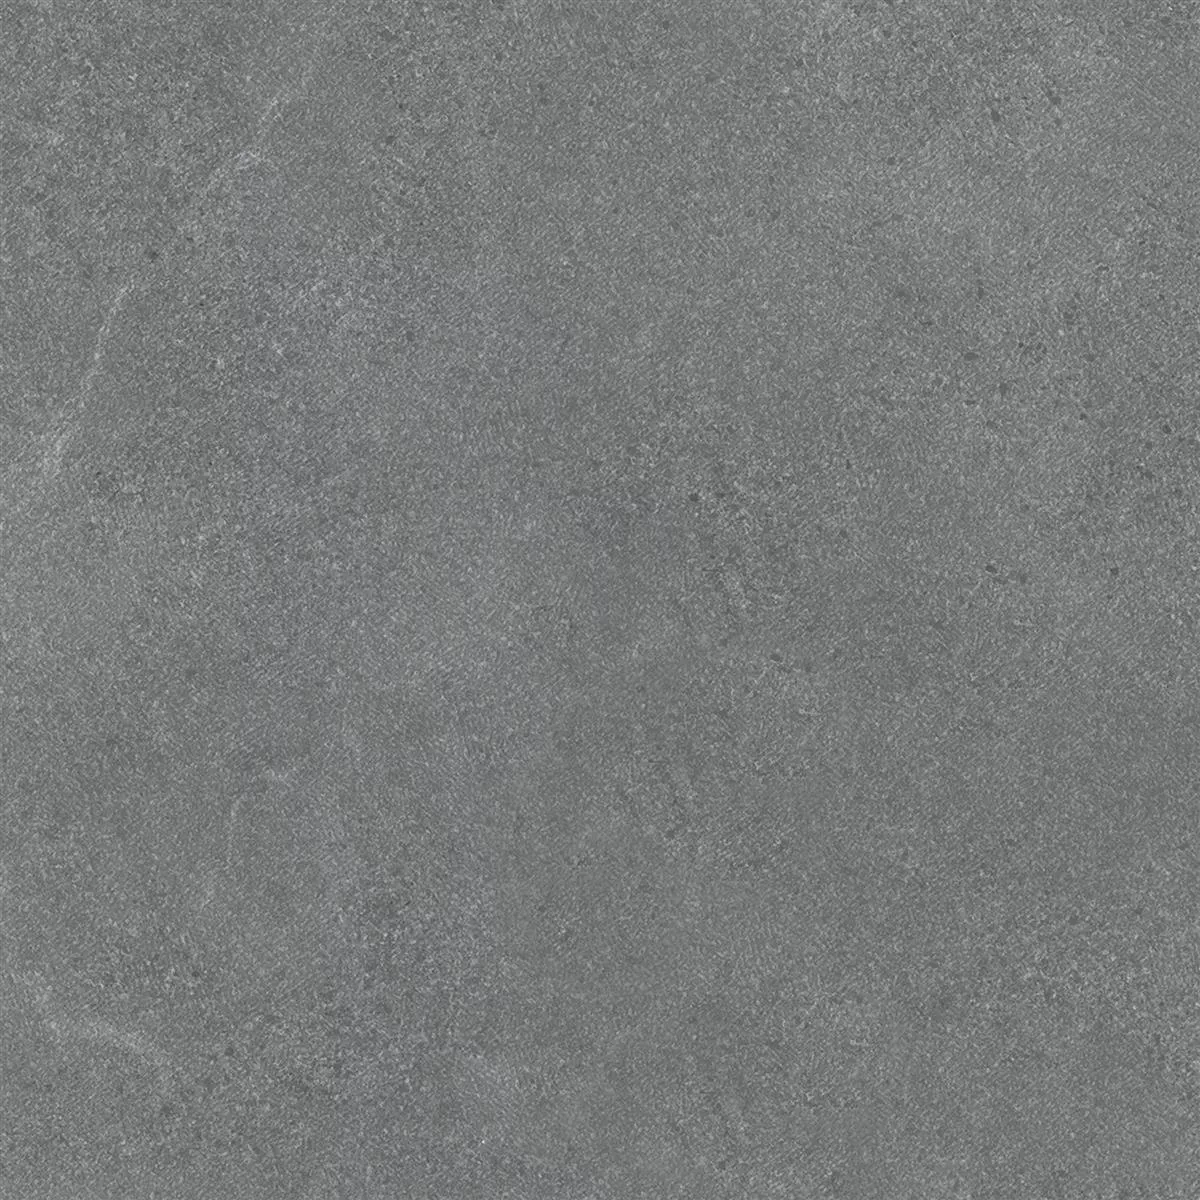 Πλακάκια Δαπέδου Galilea Άγυαλο R10B Ανθρακίτης 60x60cm